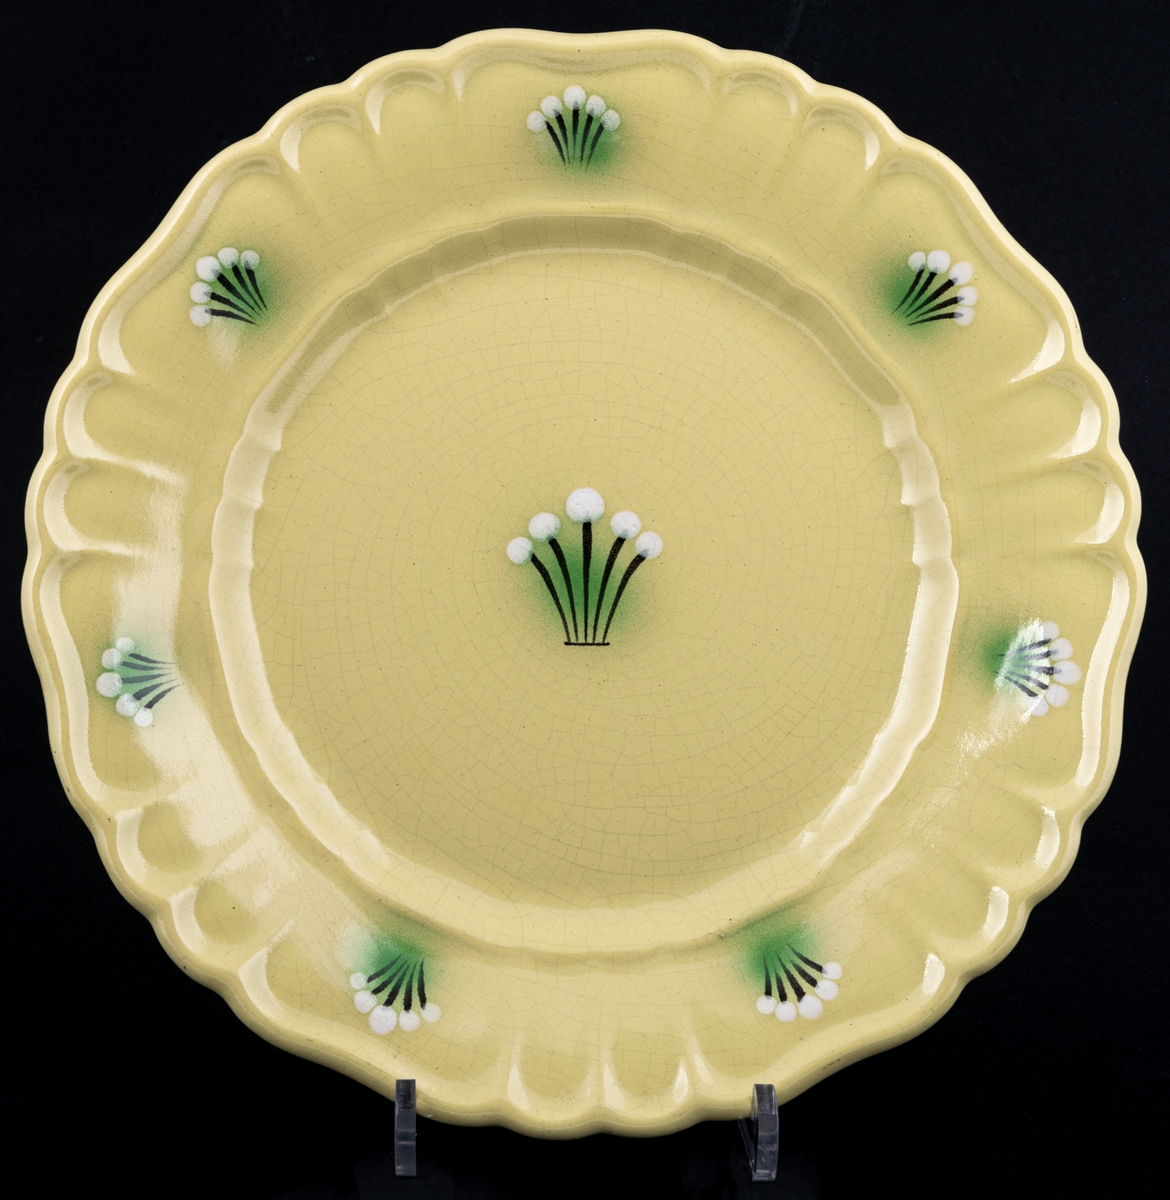 Mattallrik ur bordsservisen och dekoren Orient, tillverkad 1930-33, modell S. Dekoren Orient har gul glasyr med handmålade knippen i brunt, grönt och vitt på brämen samt i spegeln.